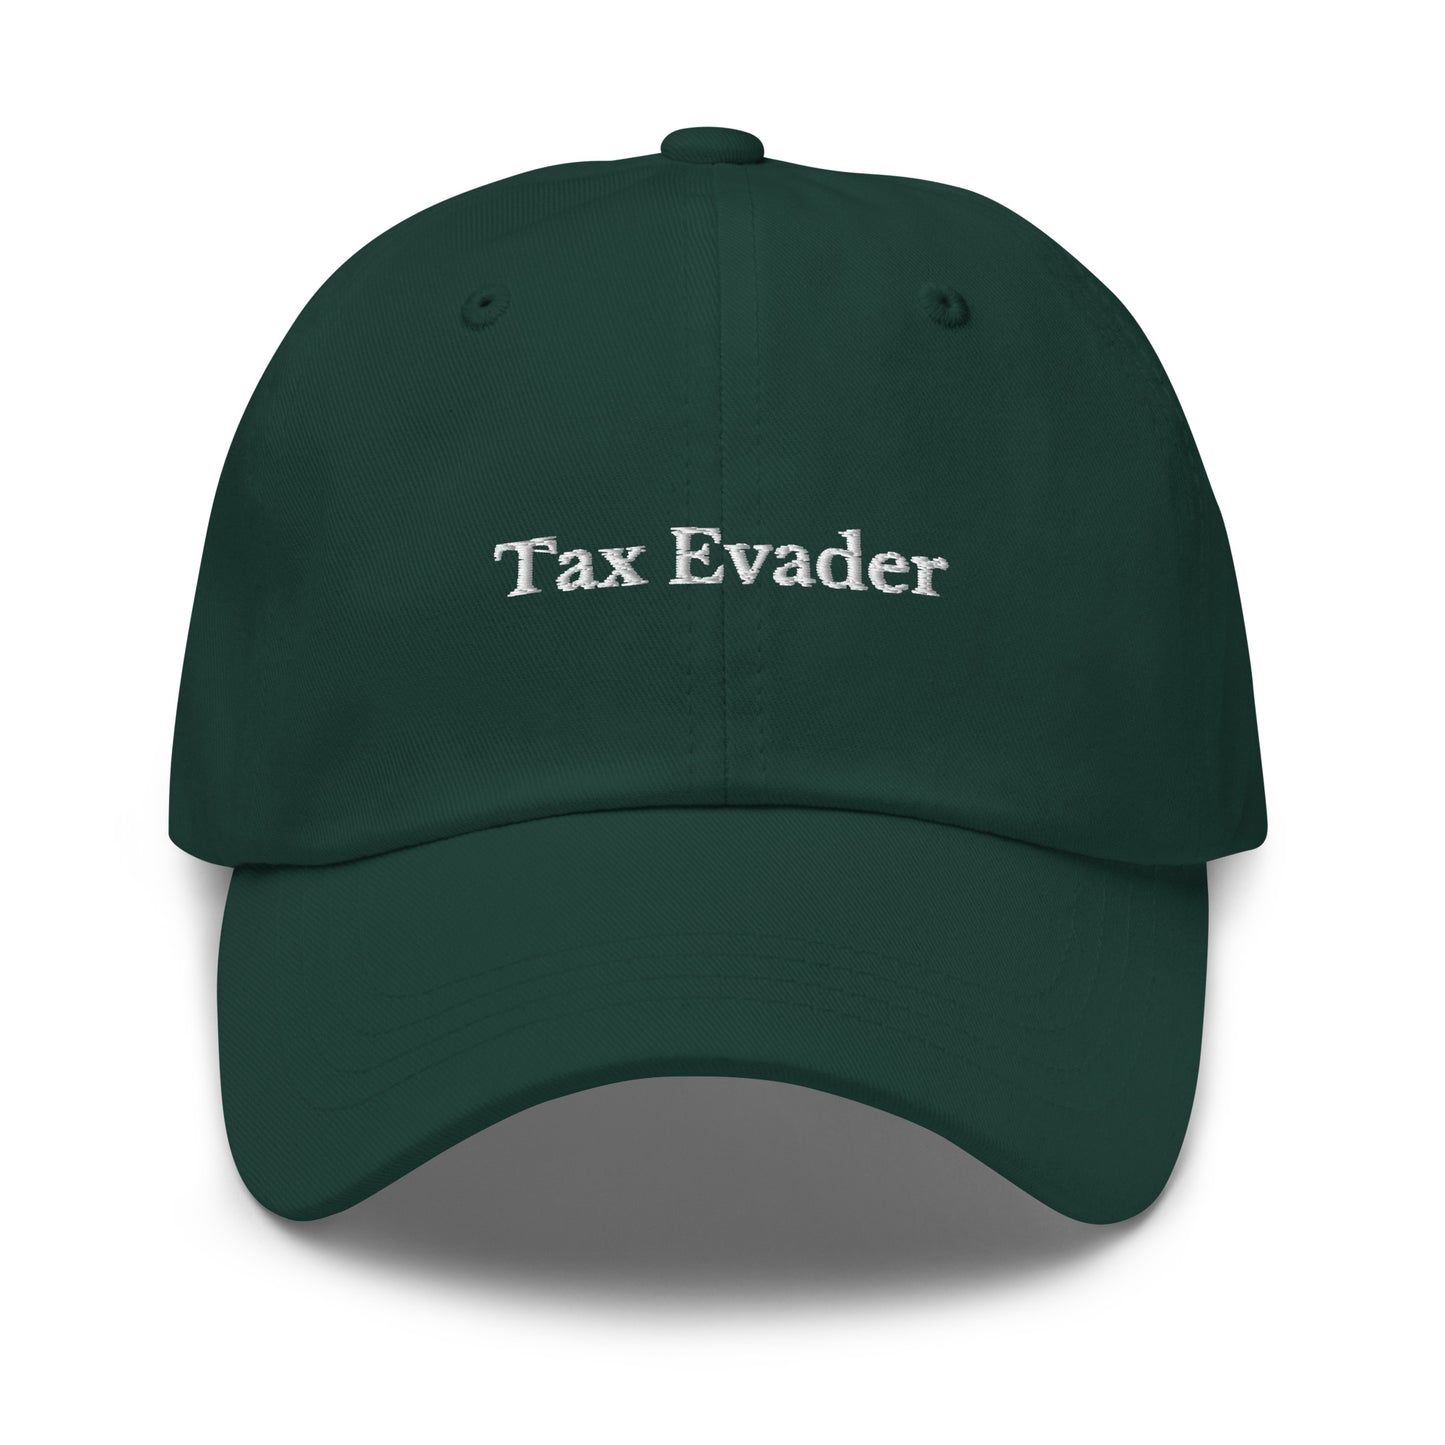 Tax Evader Cap